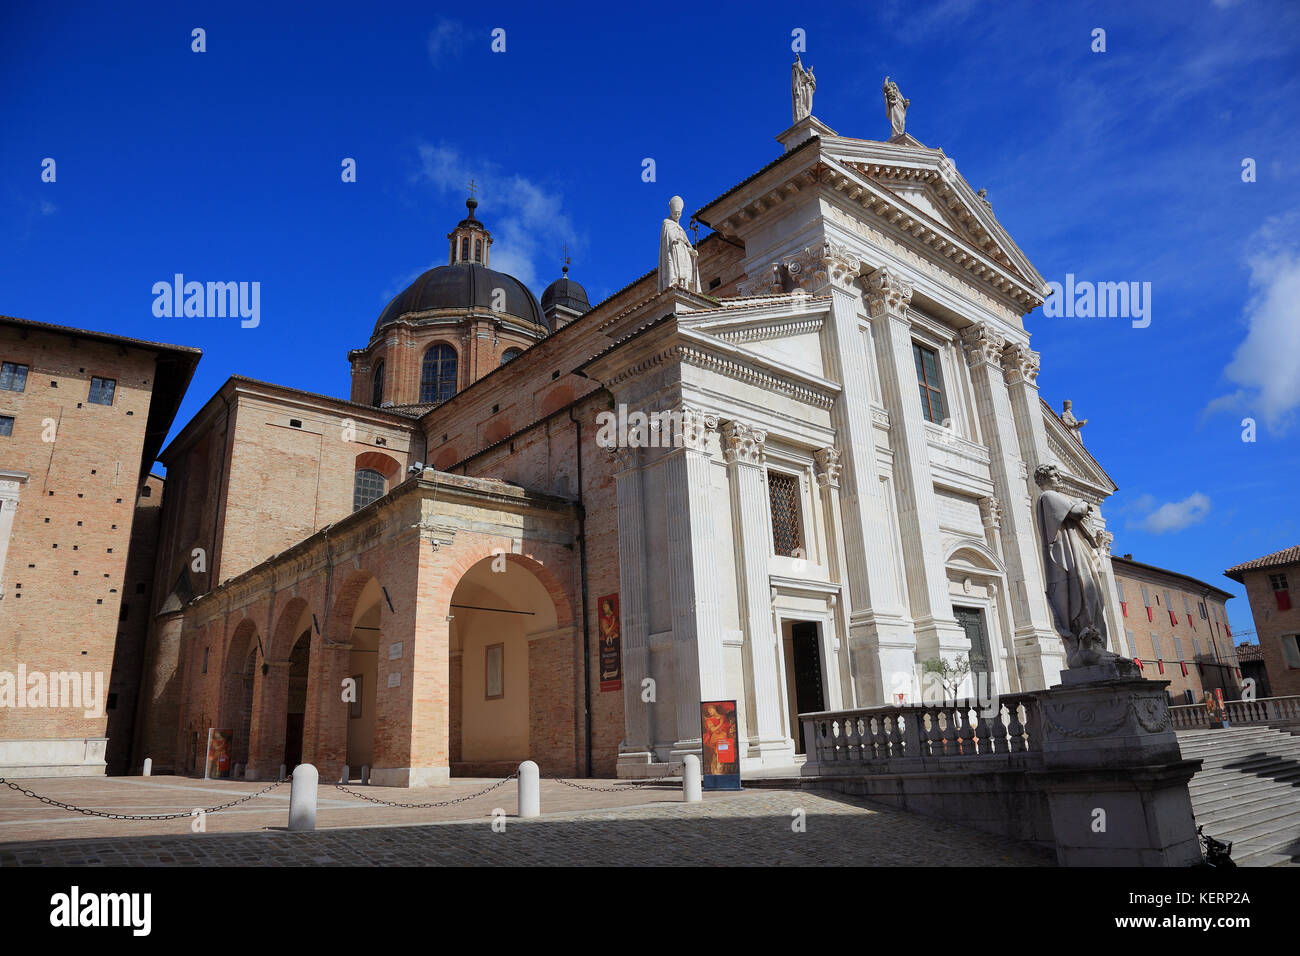 View of the Cathedral, Duomo di Urbino, Cattedrale Metropolitana di Santa Maria Assunta Duomo, Urbino, Marche, Italy Stock Photo